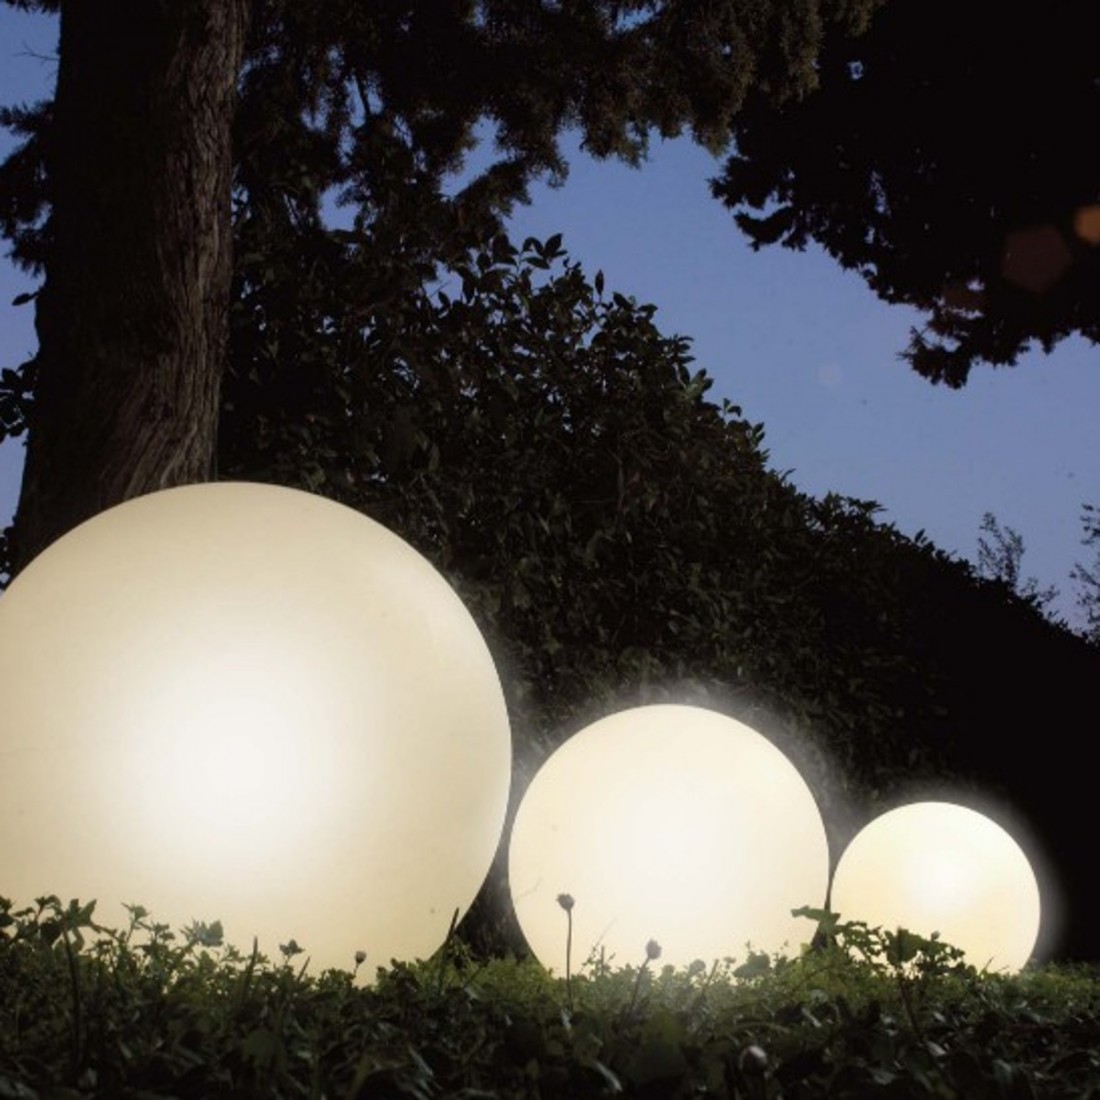 Sphère PN-SPHERE EST505 EST506 EST507 E27 blanc globe thermoplastique LED lampe terre extérieur IP65